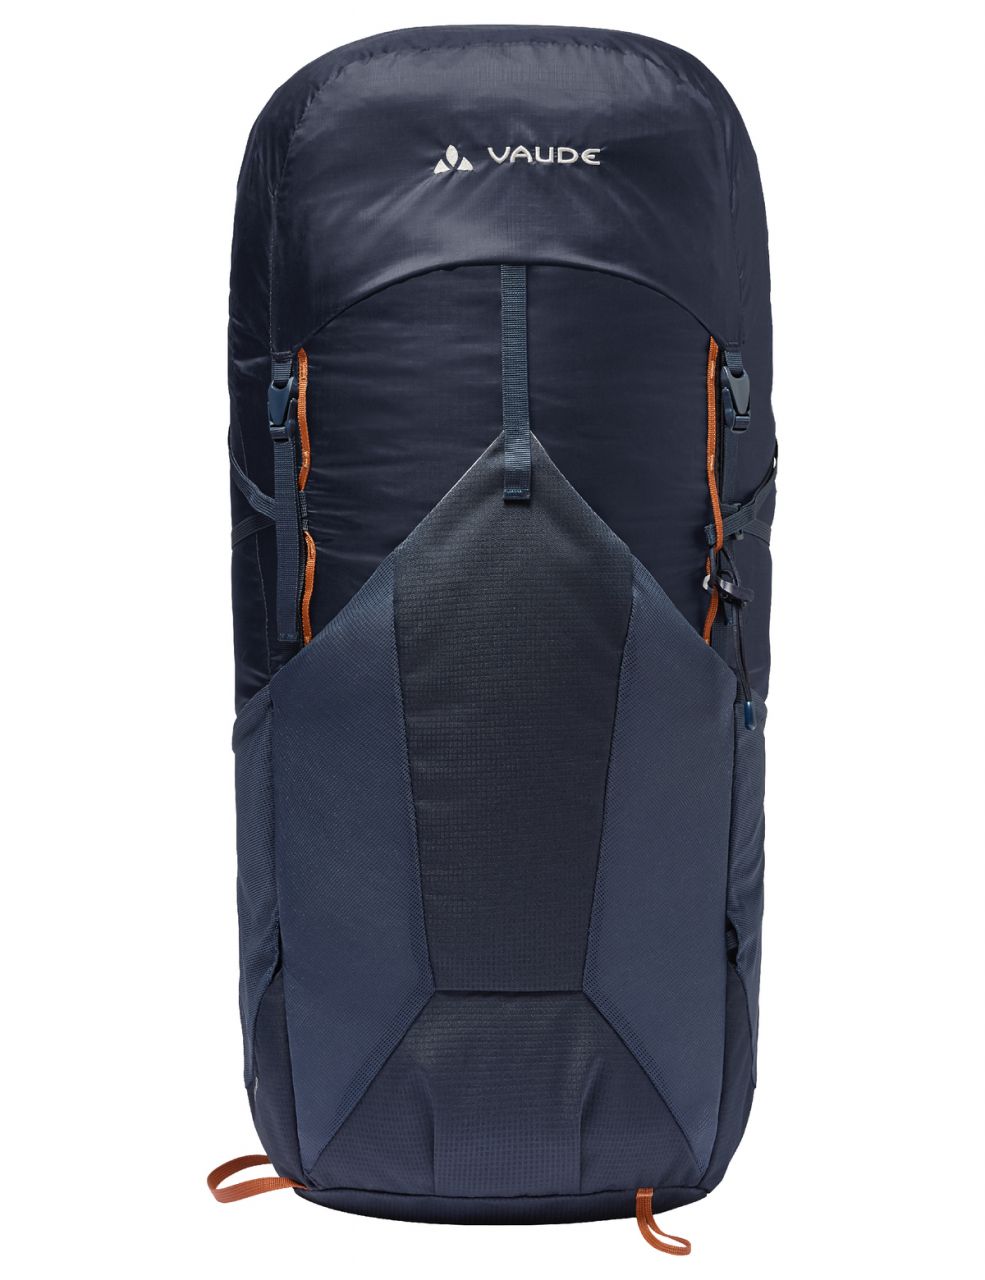 Vaude Zerum 48+ - Hiking backpack